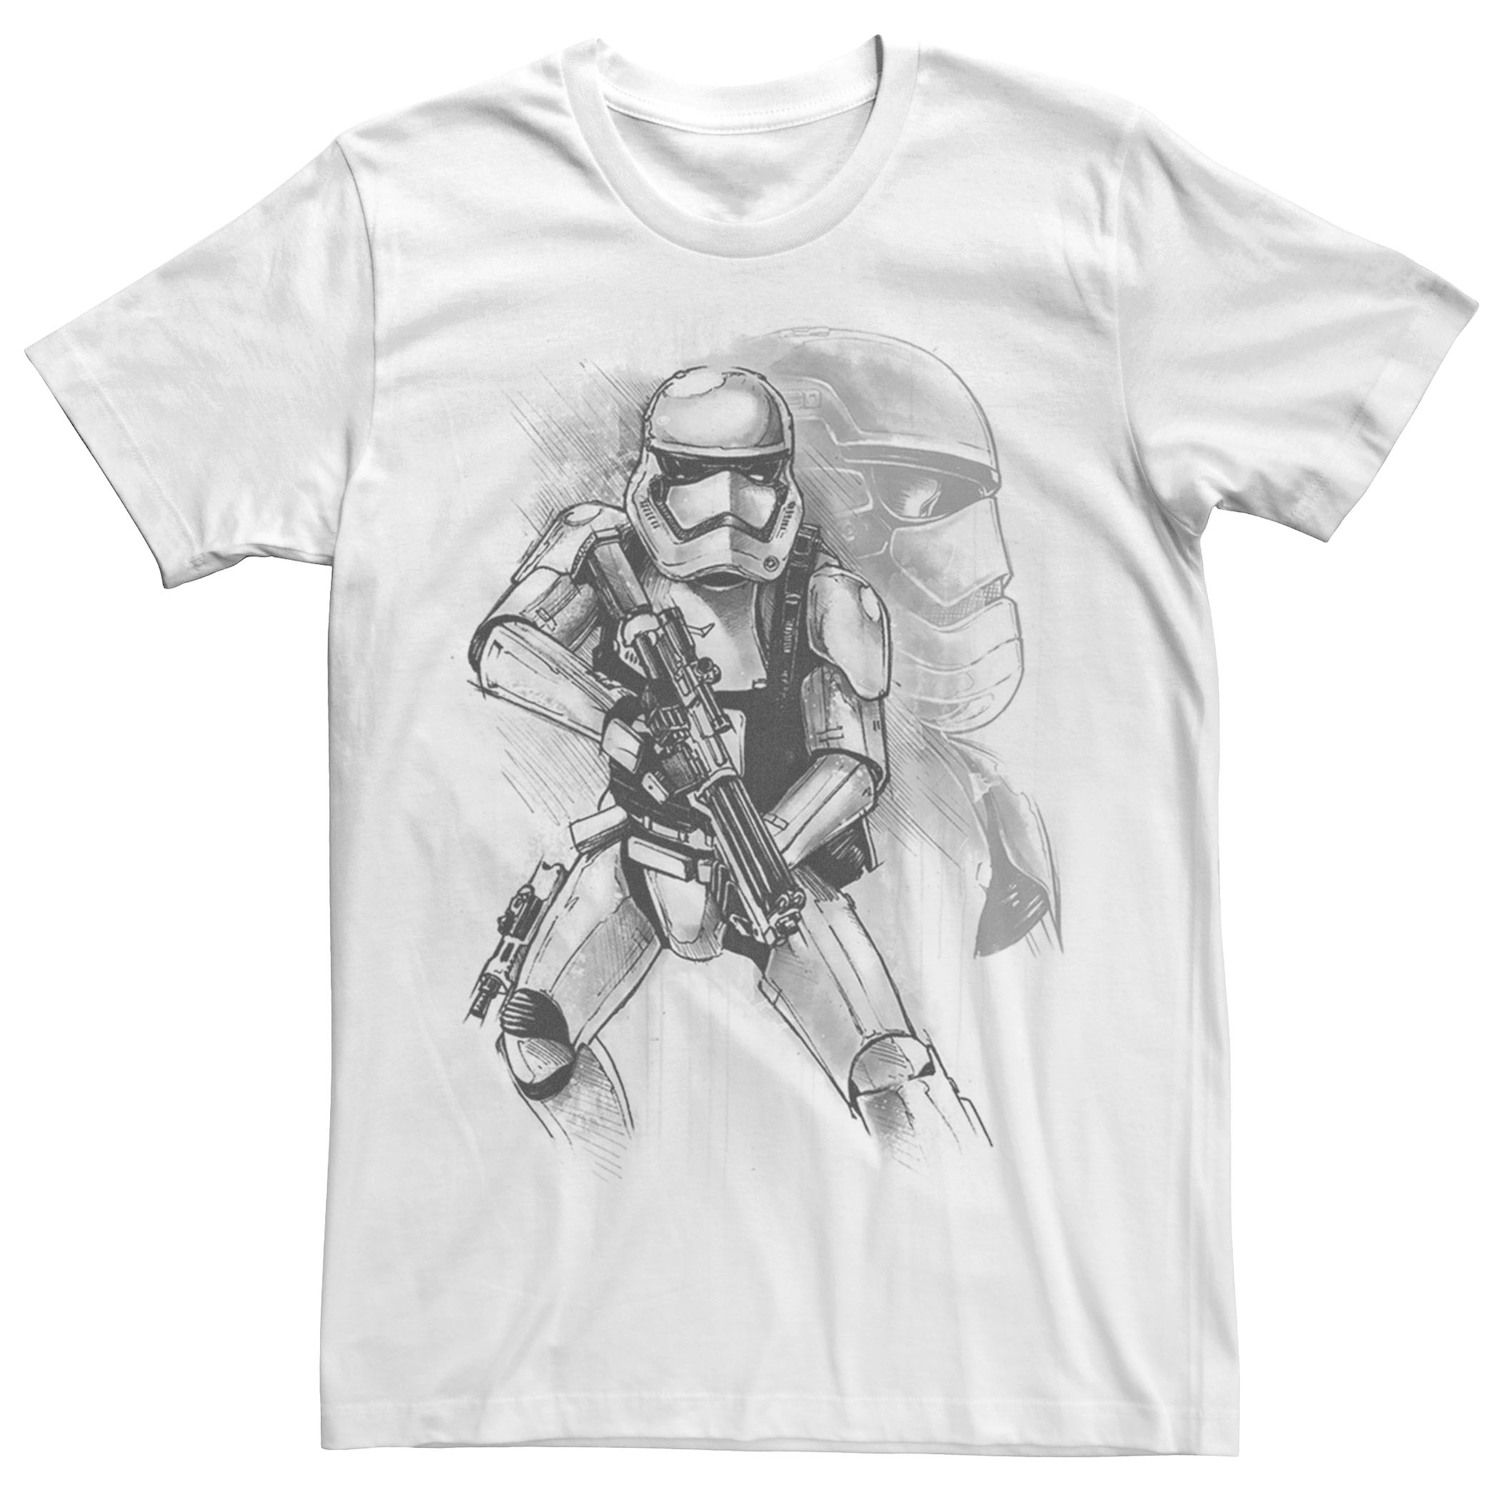 Мужская футболка Stormtrooper Sketch Star Wars цена и фото